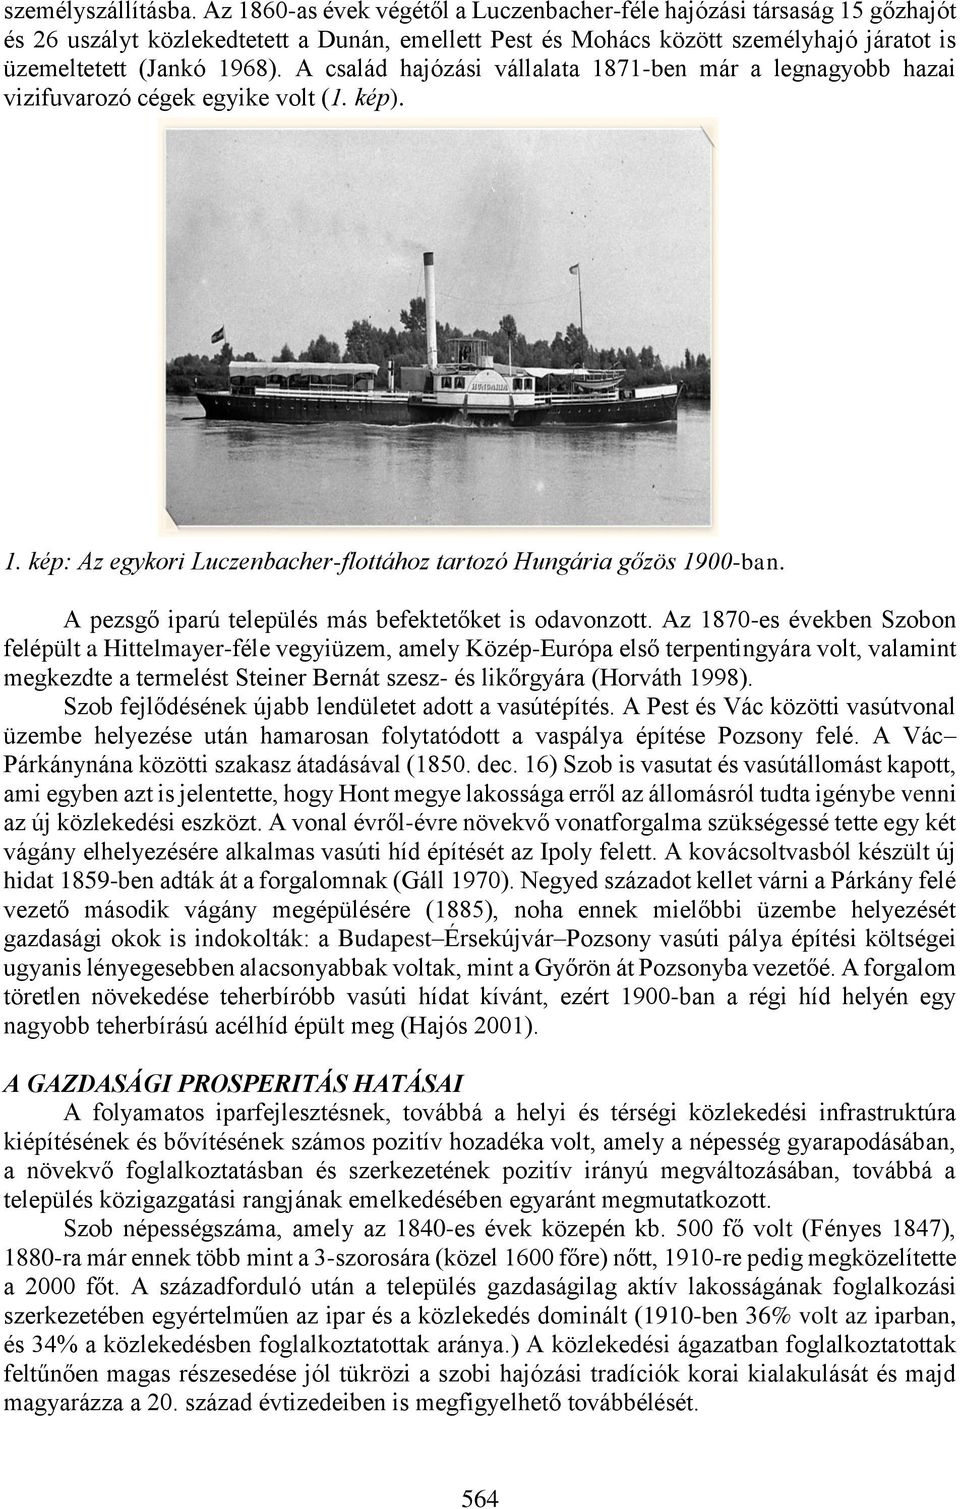 A család hajózási vállalata 1871-ben már a legnagyobb hazai vizifuvarozó cégek egyike volt (1. kép). 1. kép: Az egykori Luczenbacher-flottához tartozó Hungária gőzös 1900-ban.